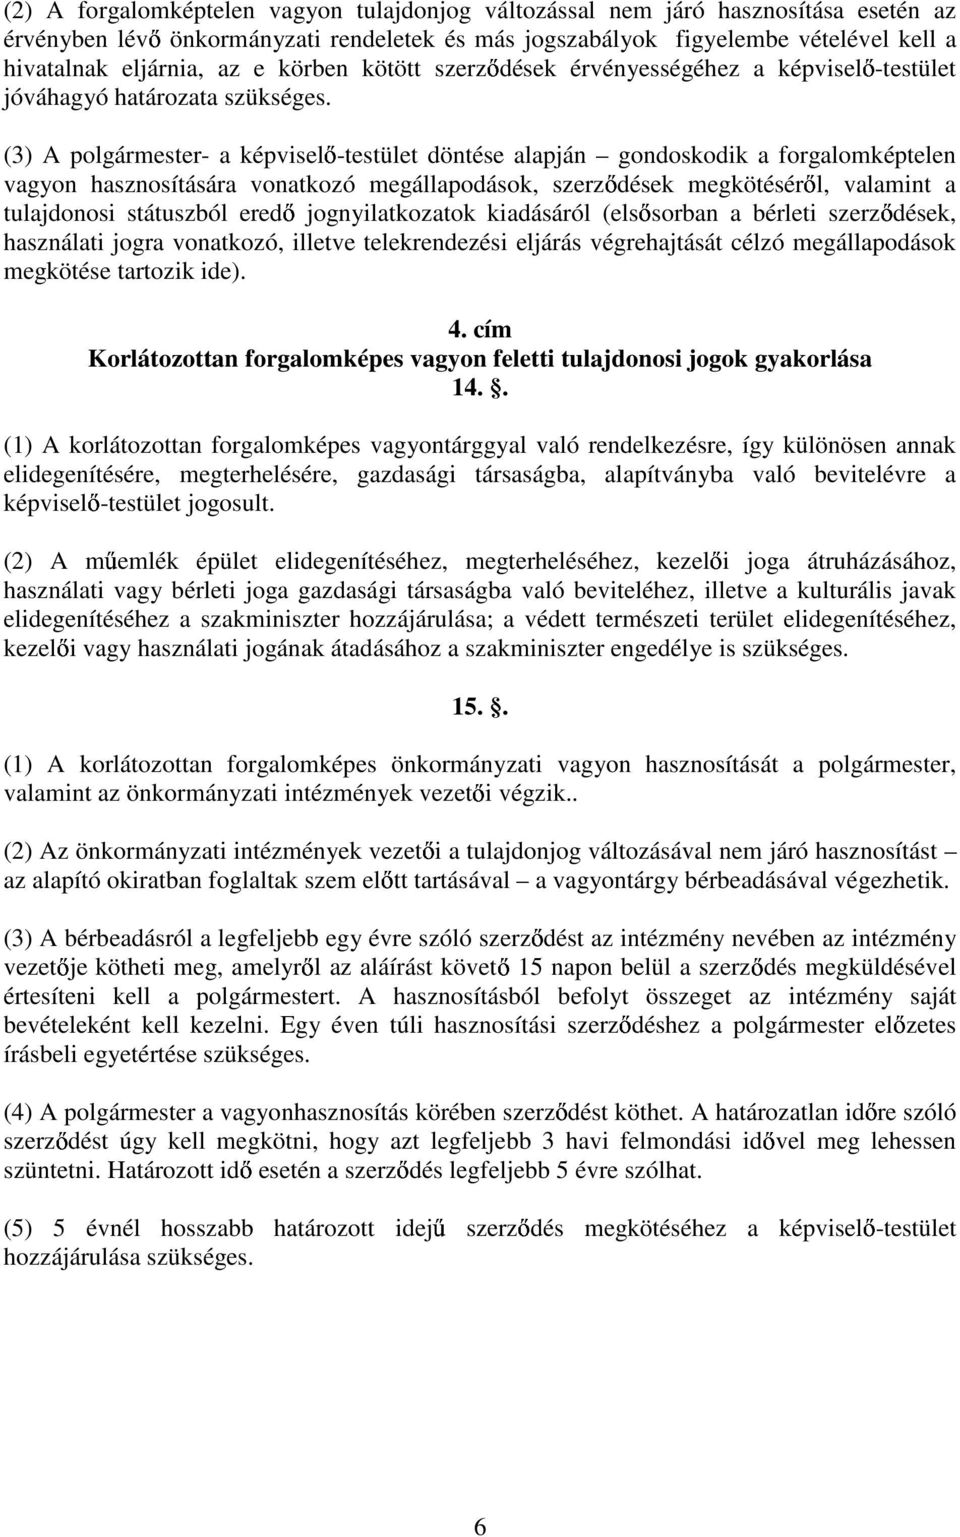 (3) A polgármester- a képviselı-testület döntése alapján gondoskodik a forgalomképtelen vagyon hasznosítására vonatkozó megállapodások, szerzıdések megkötésérıl, valamint a tulajdonosi státuszból